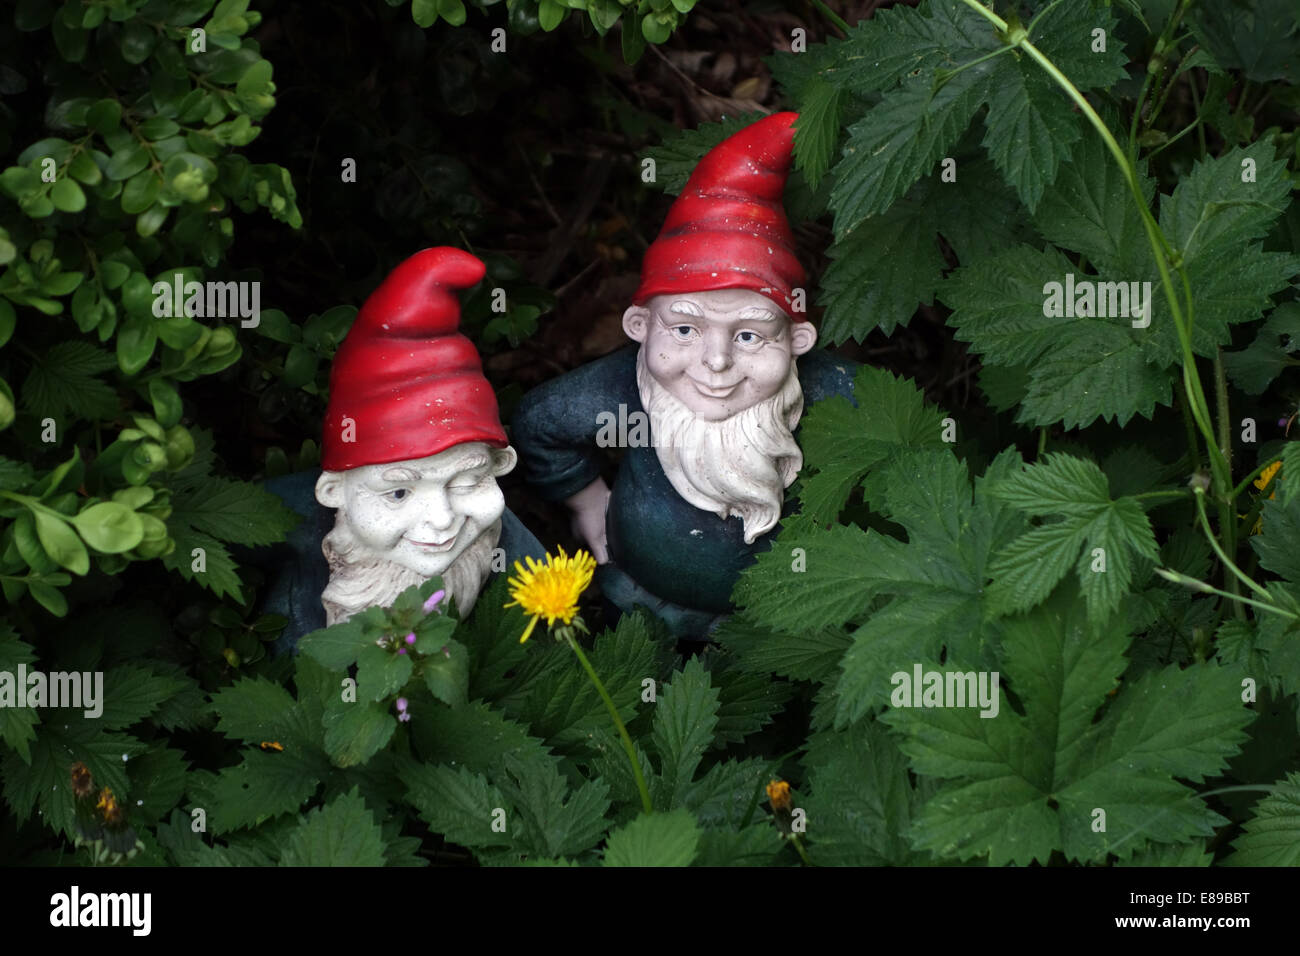 Berlin, Deutschland, Garten Zwerge in einem Gebüsch Stockfotografie - Alamy